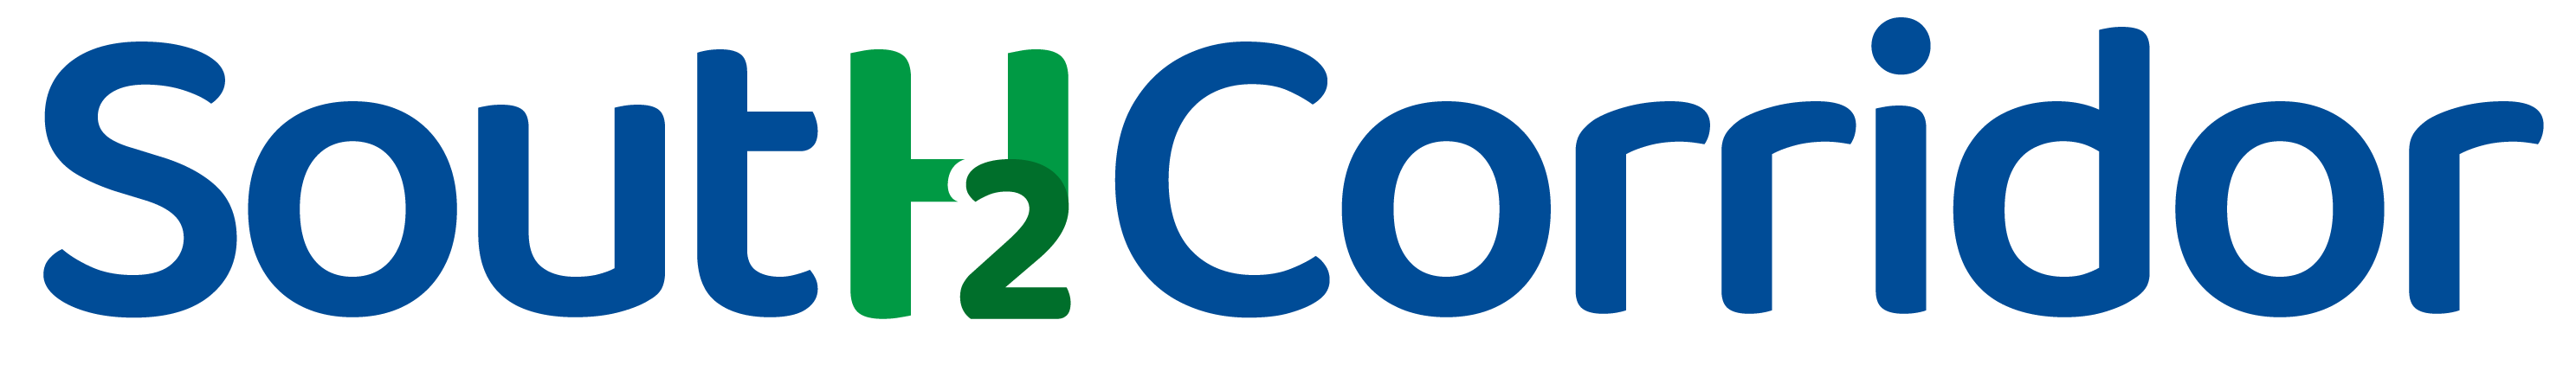 SoutH2Corridor Logo